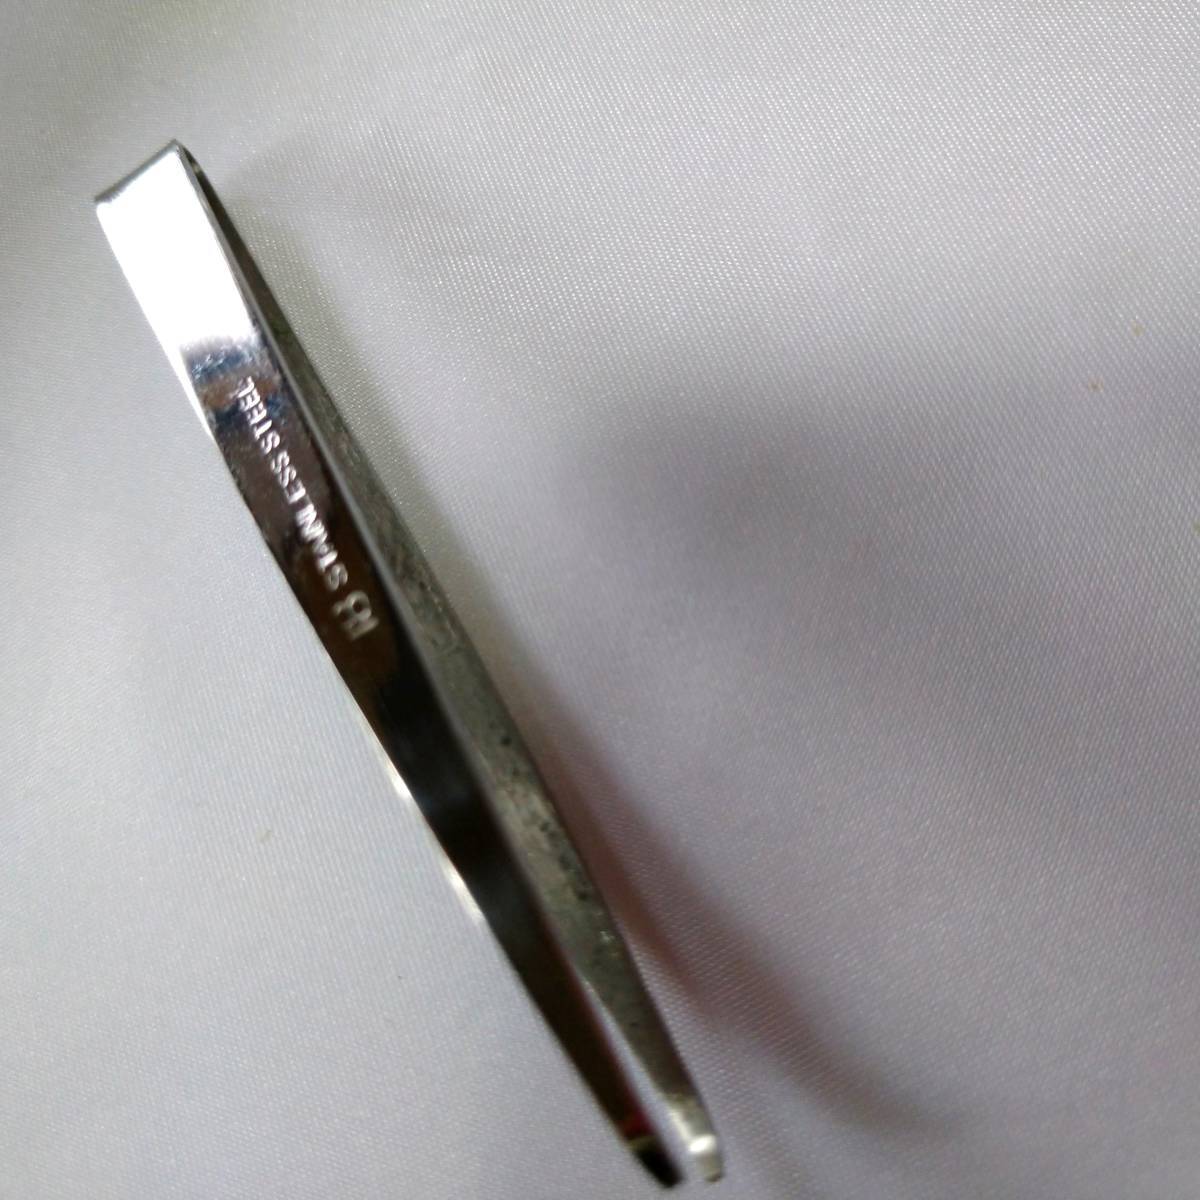  неиспользуемый 　 хранение товара 　 сделано в Японии 　 нержавеющая сталь  пр-во  　... волос ...　 волос ...　 и ...　 общая длина   около ７５㎜　... ширина  около １㎜　２０ шт.   комплект  